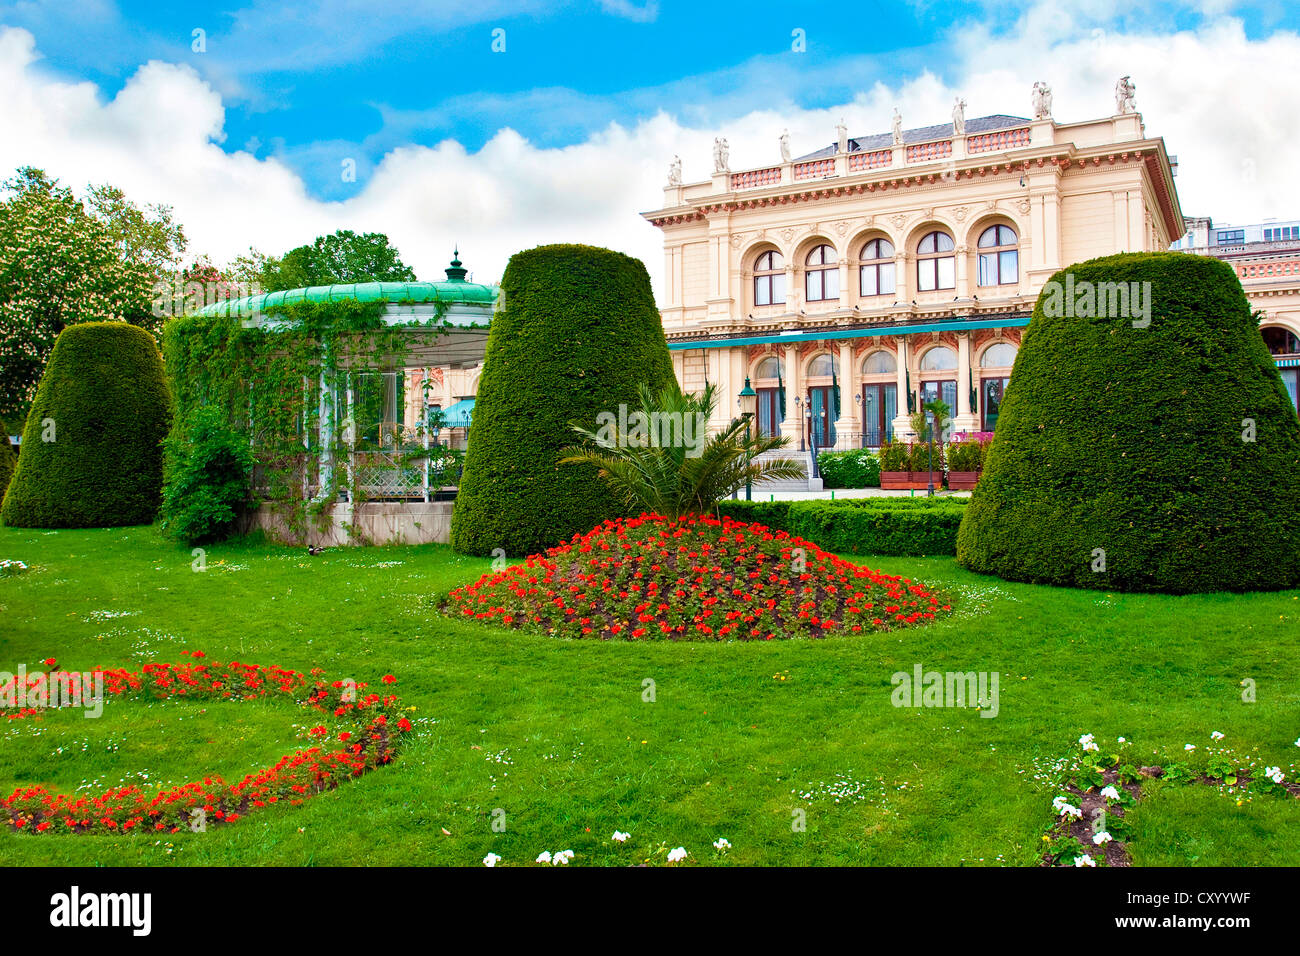 Vienne, Autriche, Kursalon, parc municipal, Stadtpark. Valse viennoise effectuée chaque soir à la musique de Strauss. Banque D'Images